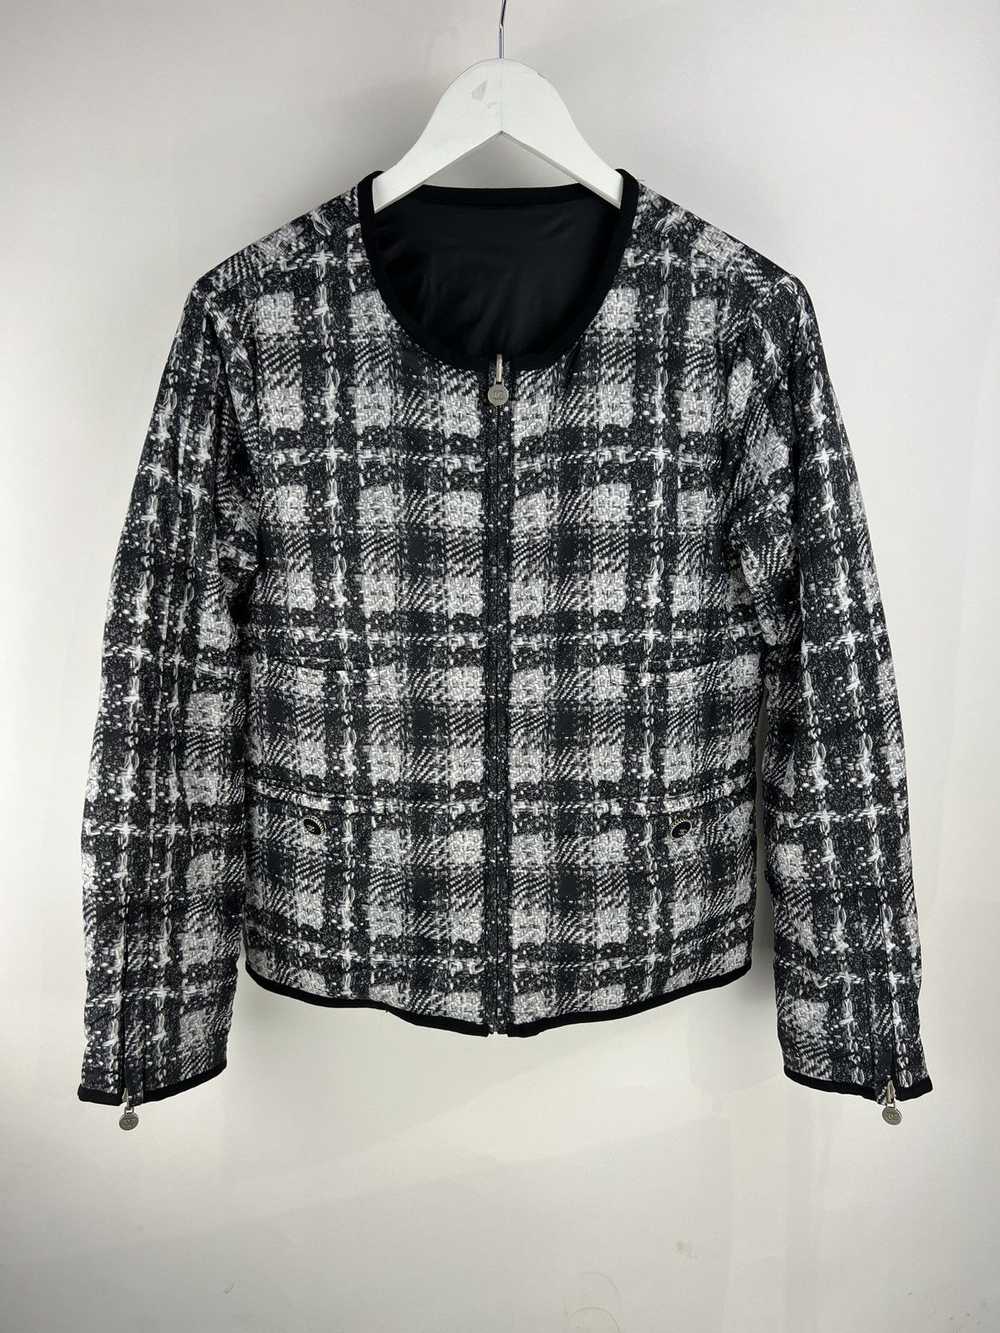 Chanel CHANEL Tweed Nylon Reversible Jacket - image 1